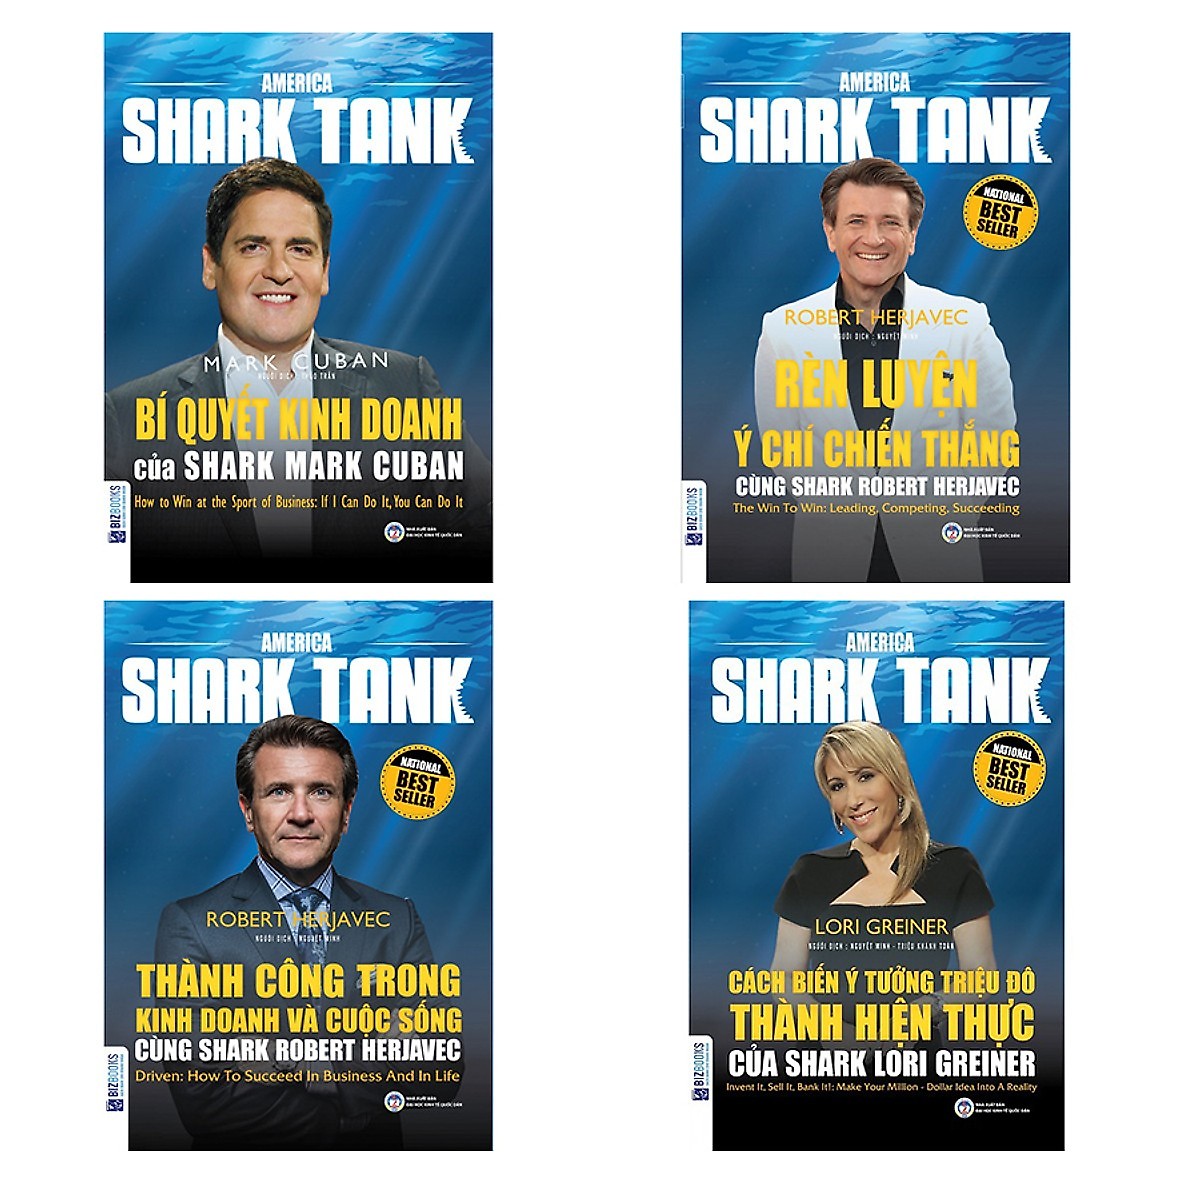 Combo 4 Cuốn Shark Tank (Bí Quyết Kinh Doanh + Rèn Luyện Ý Chí Chiến Thắng + Thành Công Trong Kinh Doanh Và Cuộc Sống + Cách Biến Ý Tưởng Triệu Đô Thành Hiện Thực) (Tặng kèm Kho Audio Books)